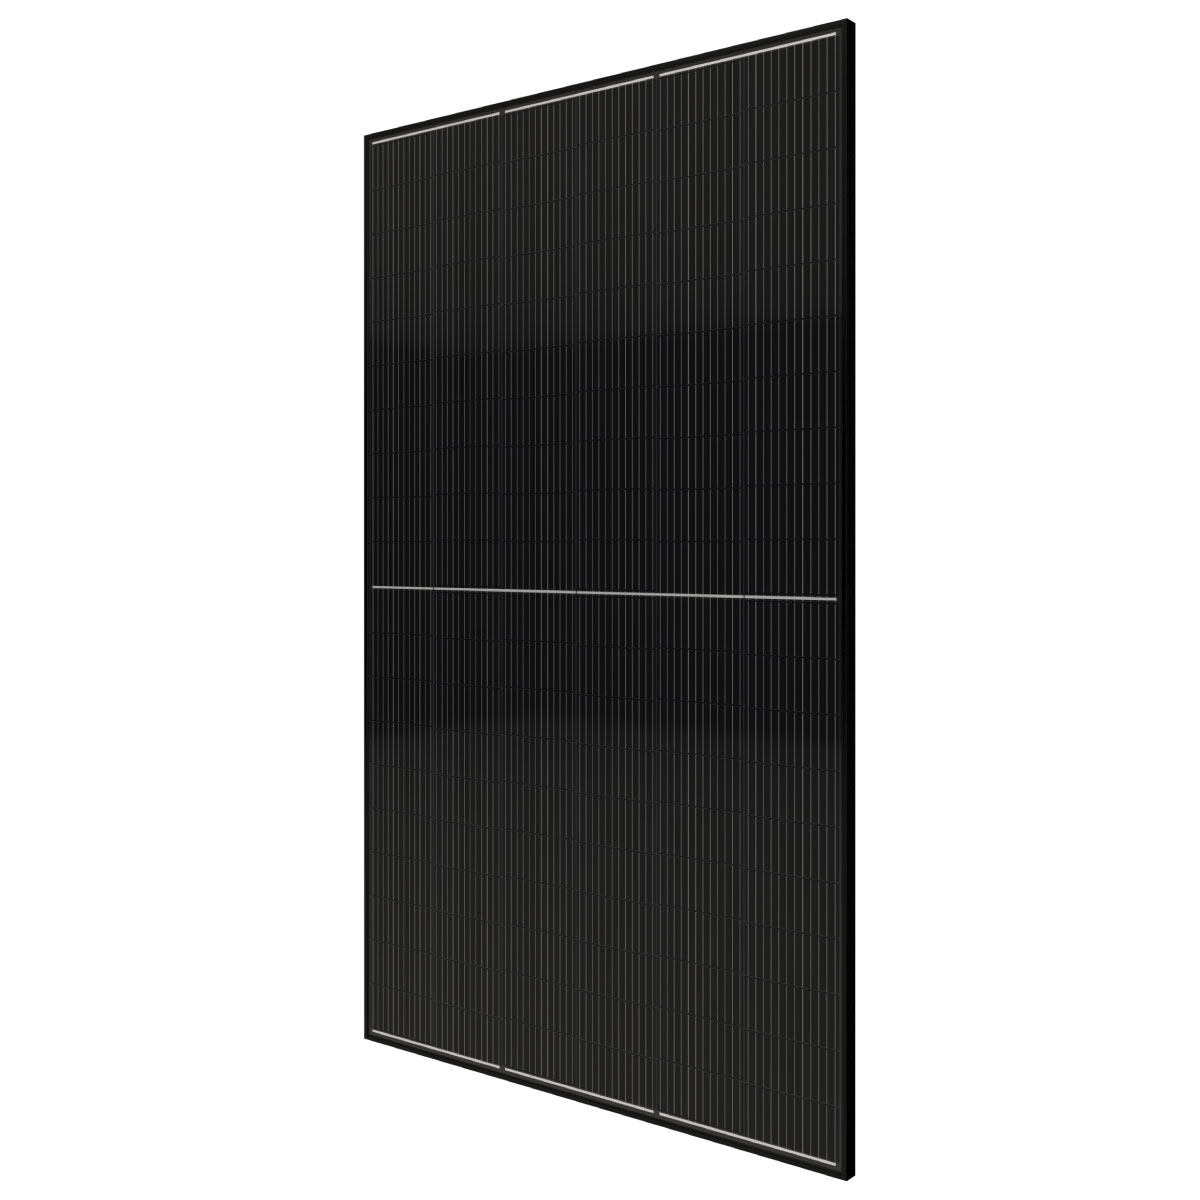 TommaTech 590Wp 120PM M12 Full Black Güneş Paneli